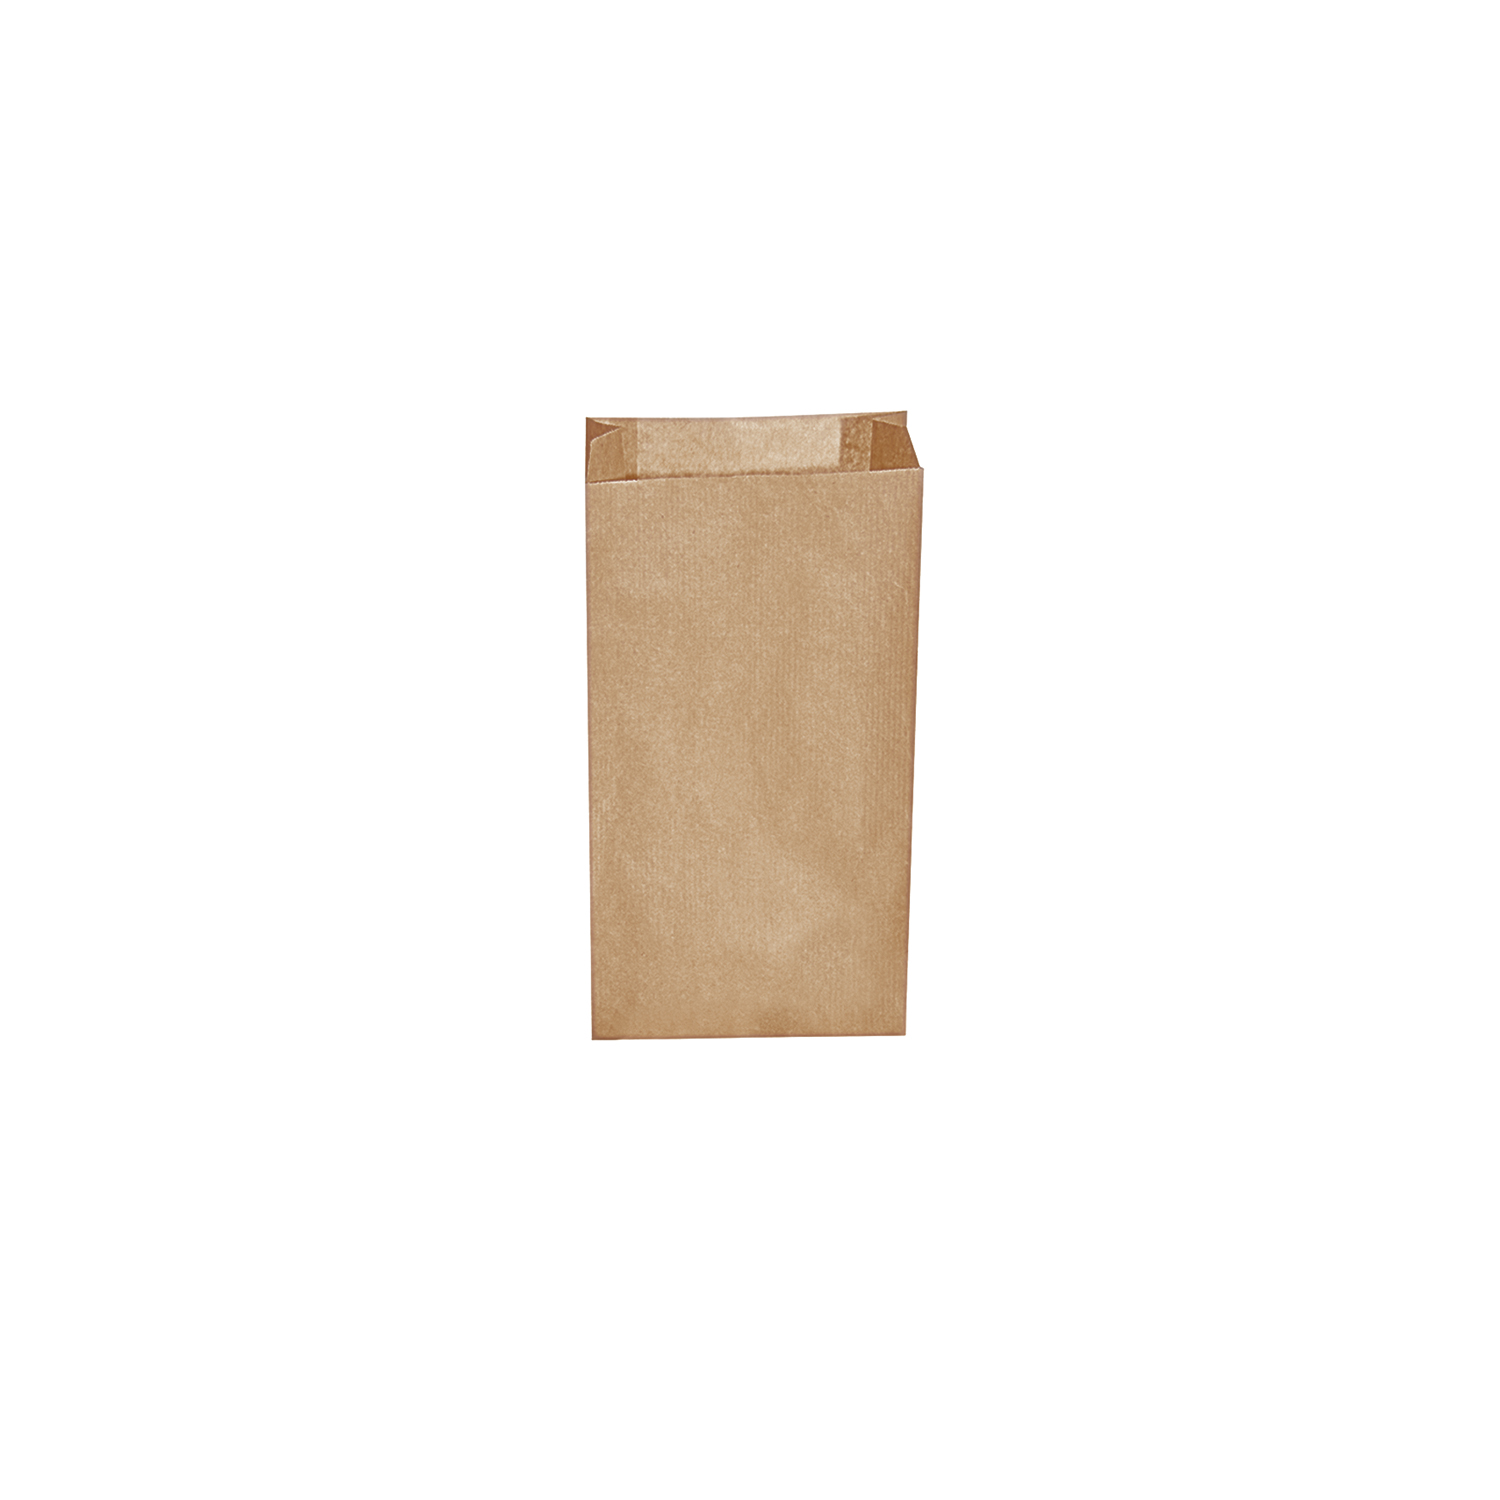 Desiatové pap. vrecká hnedé 0,5 kg (10+5 x 22 cm) [500 ks] 